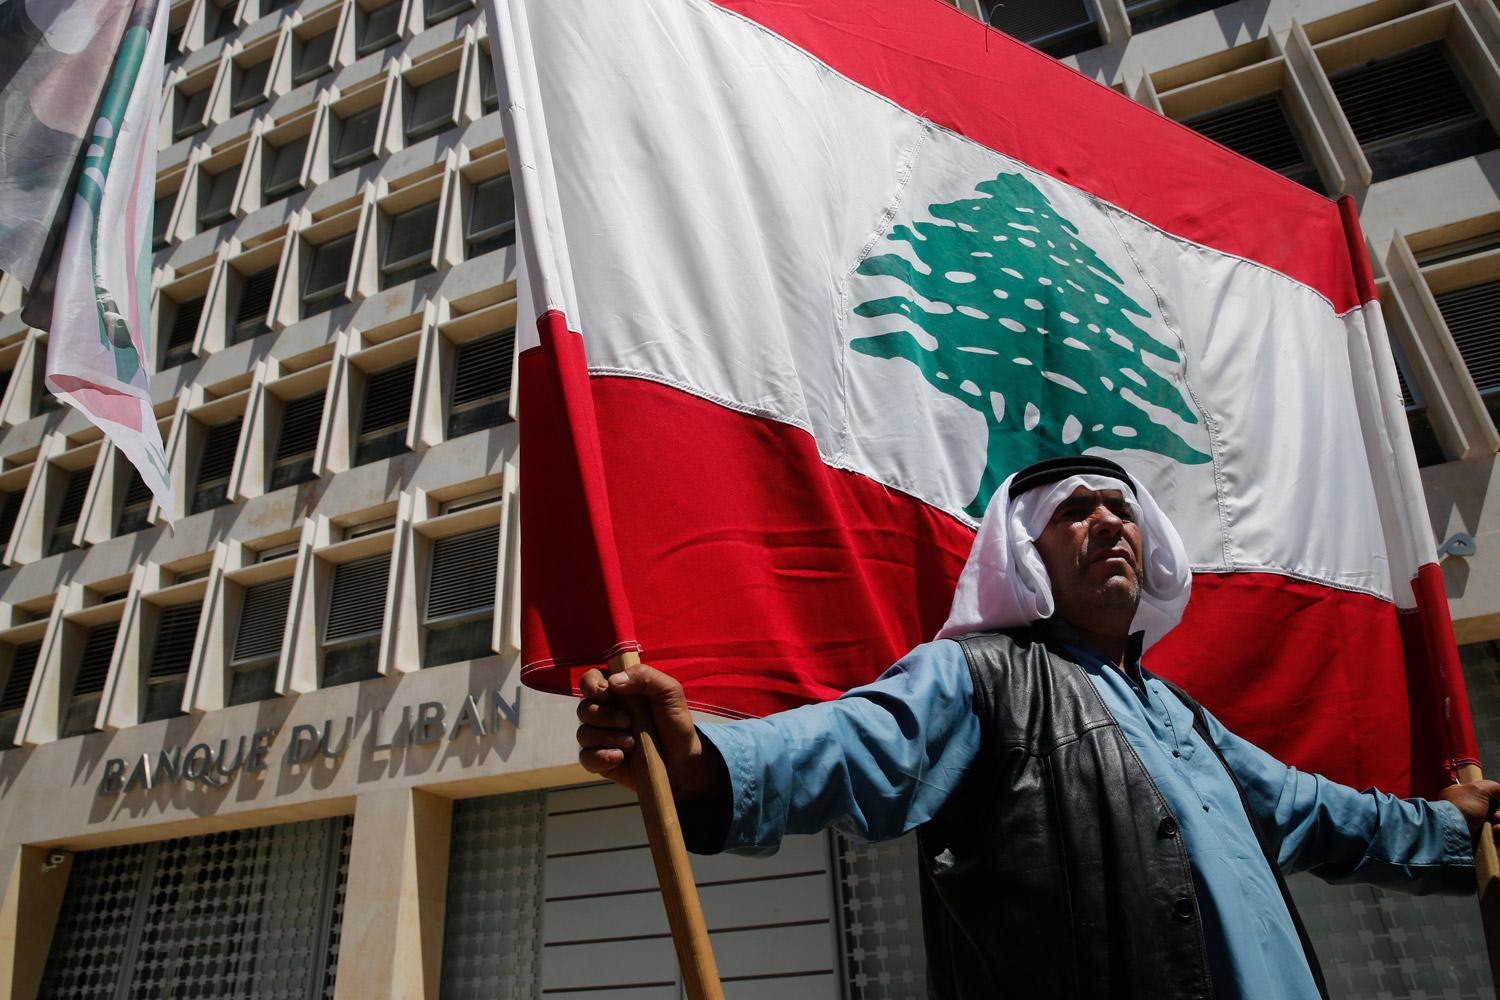 المواطن اللبناني البسيط الحلقة الأضعف التي تدفع ثمن التقشف